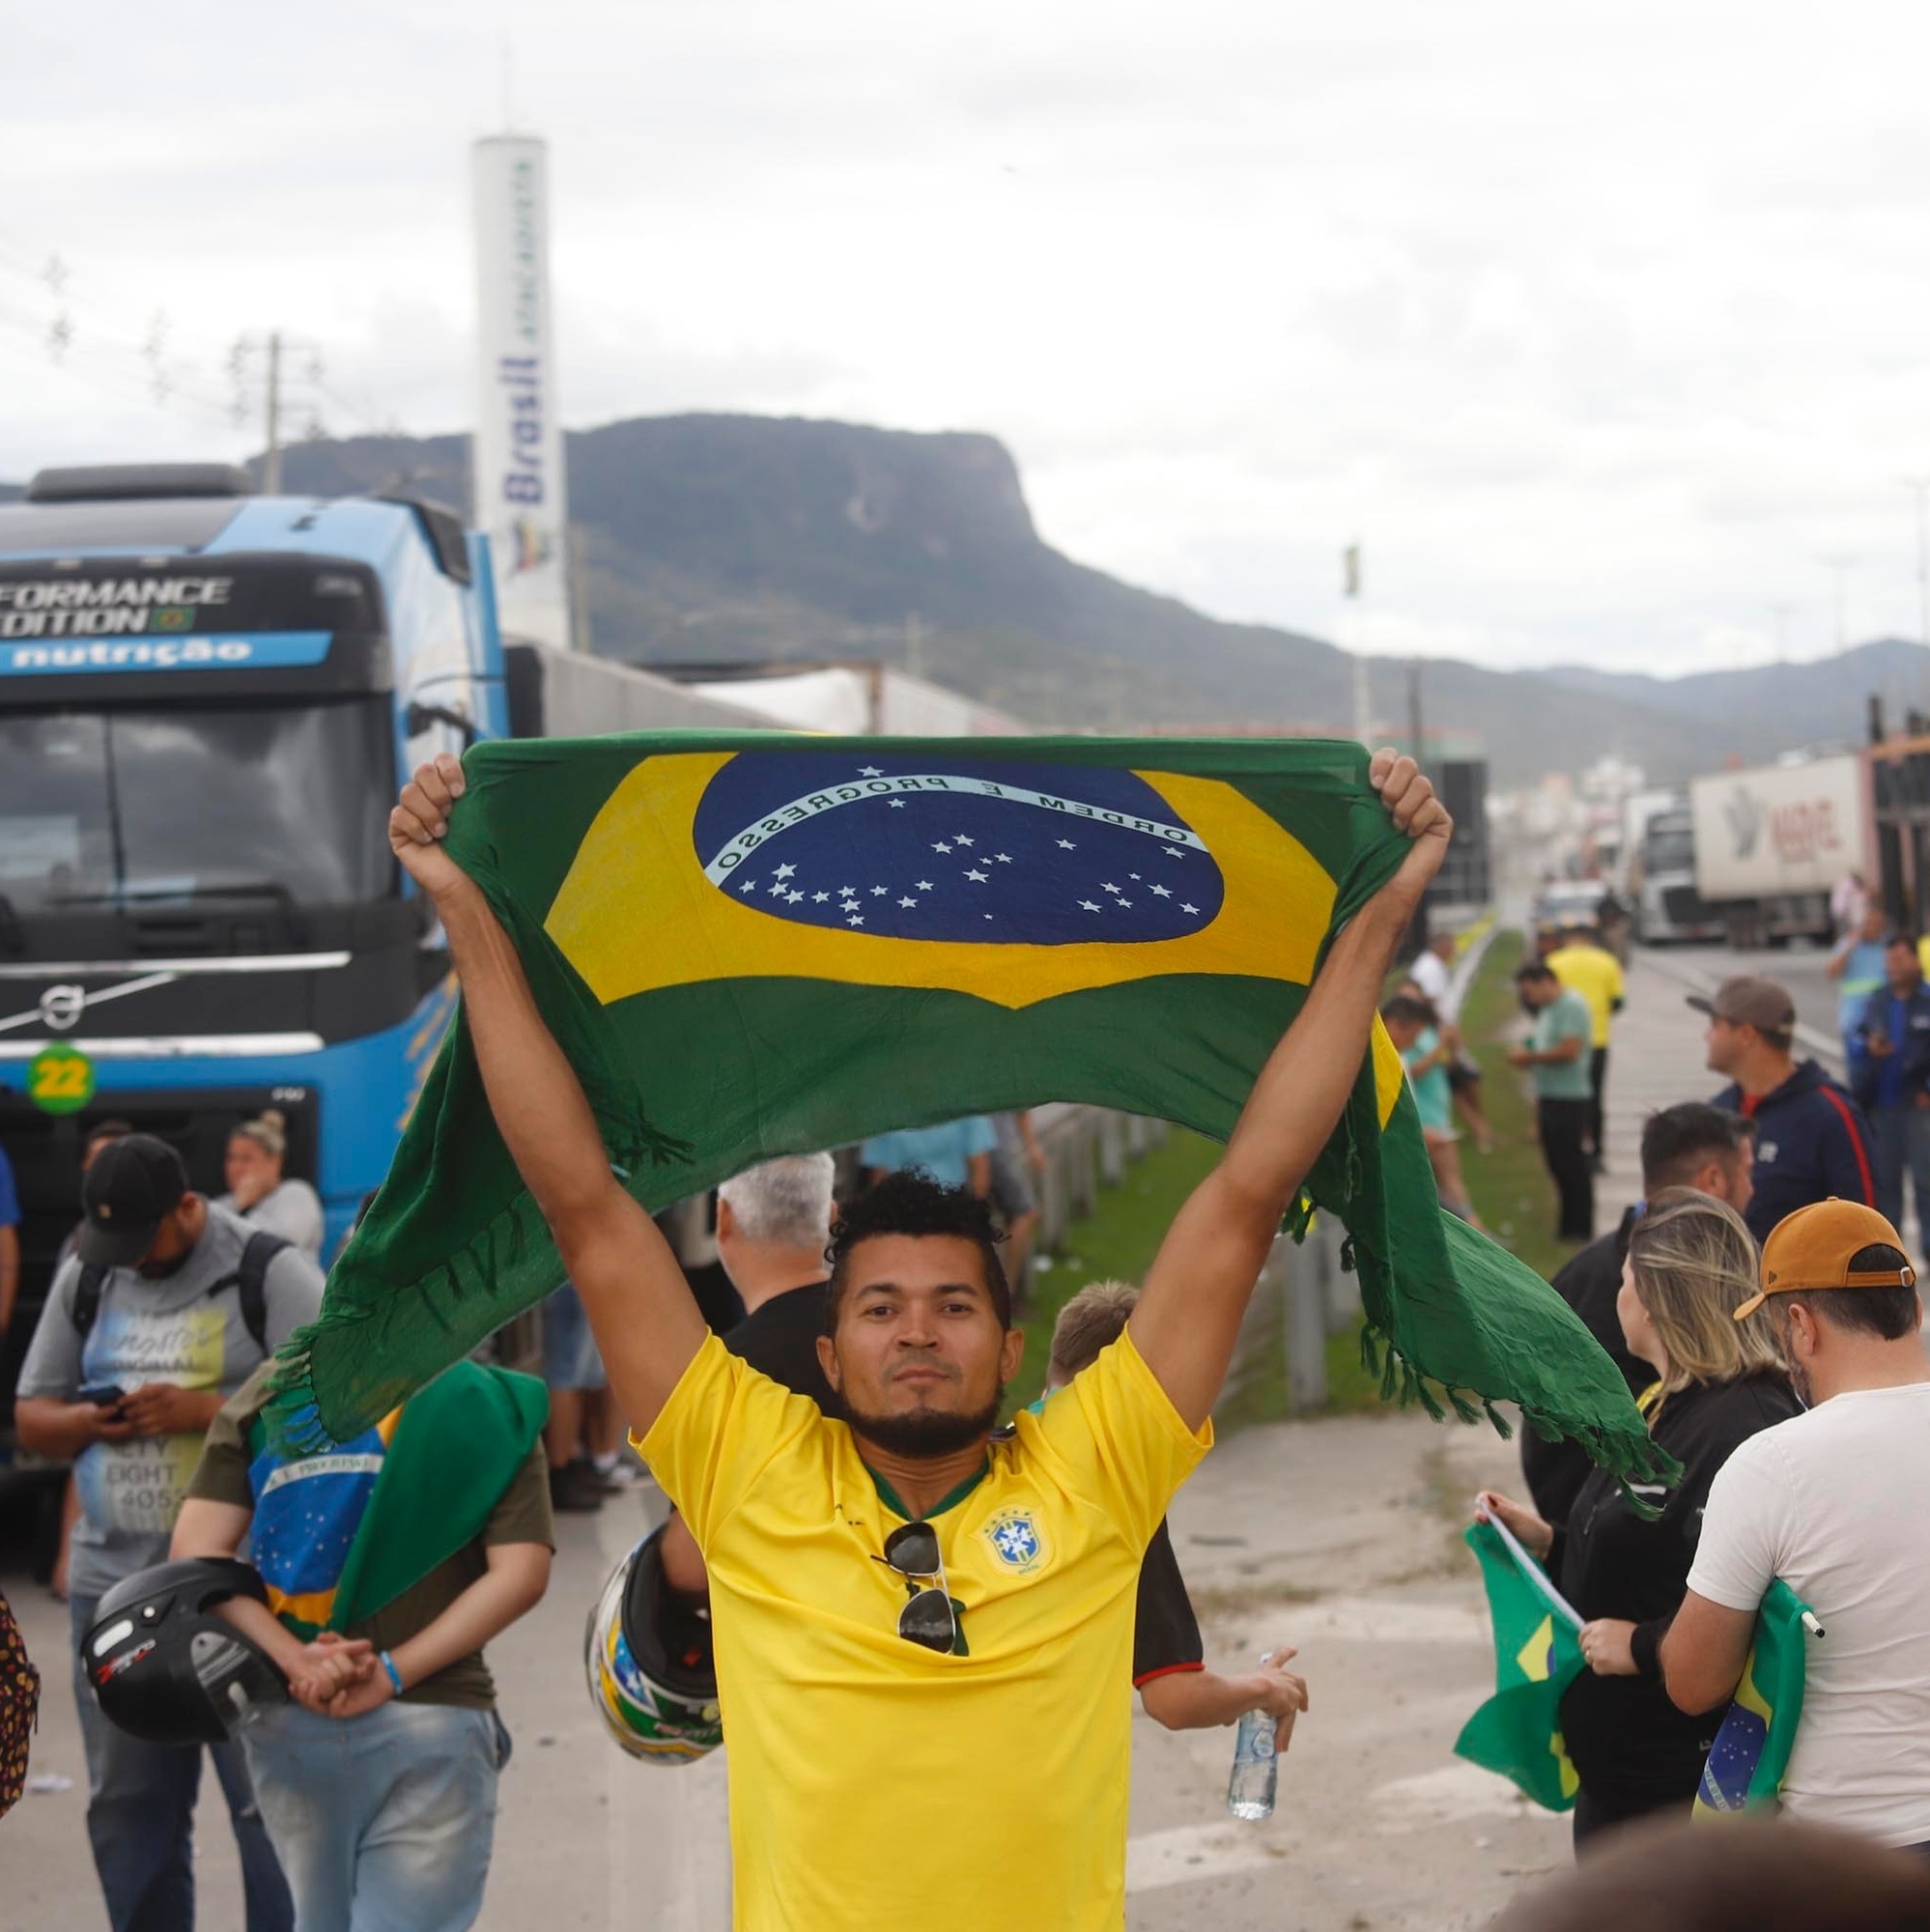 Bolsonaristas incentivam folgas para caminhoneiro votar - 20/10/2022 -  Mercado - Folha